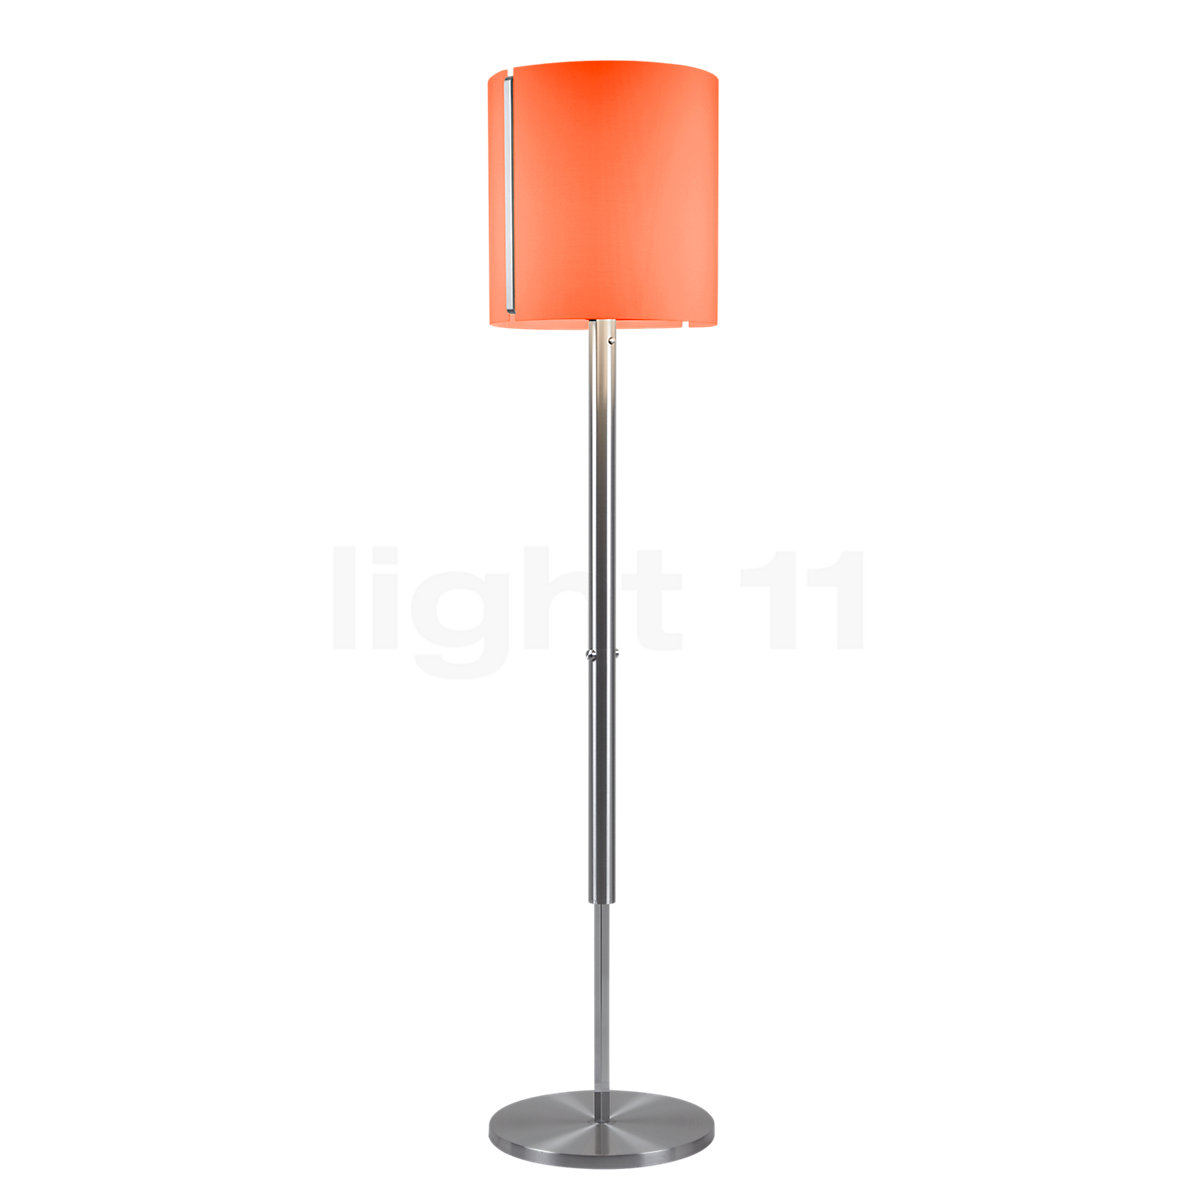 Serien Lighting Jones Floor Lamp S Led, Orange Standing Lamp Shade